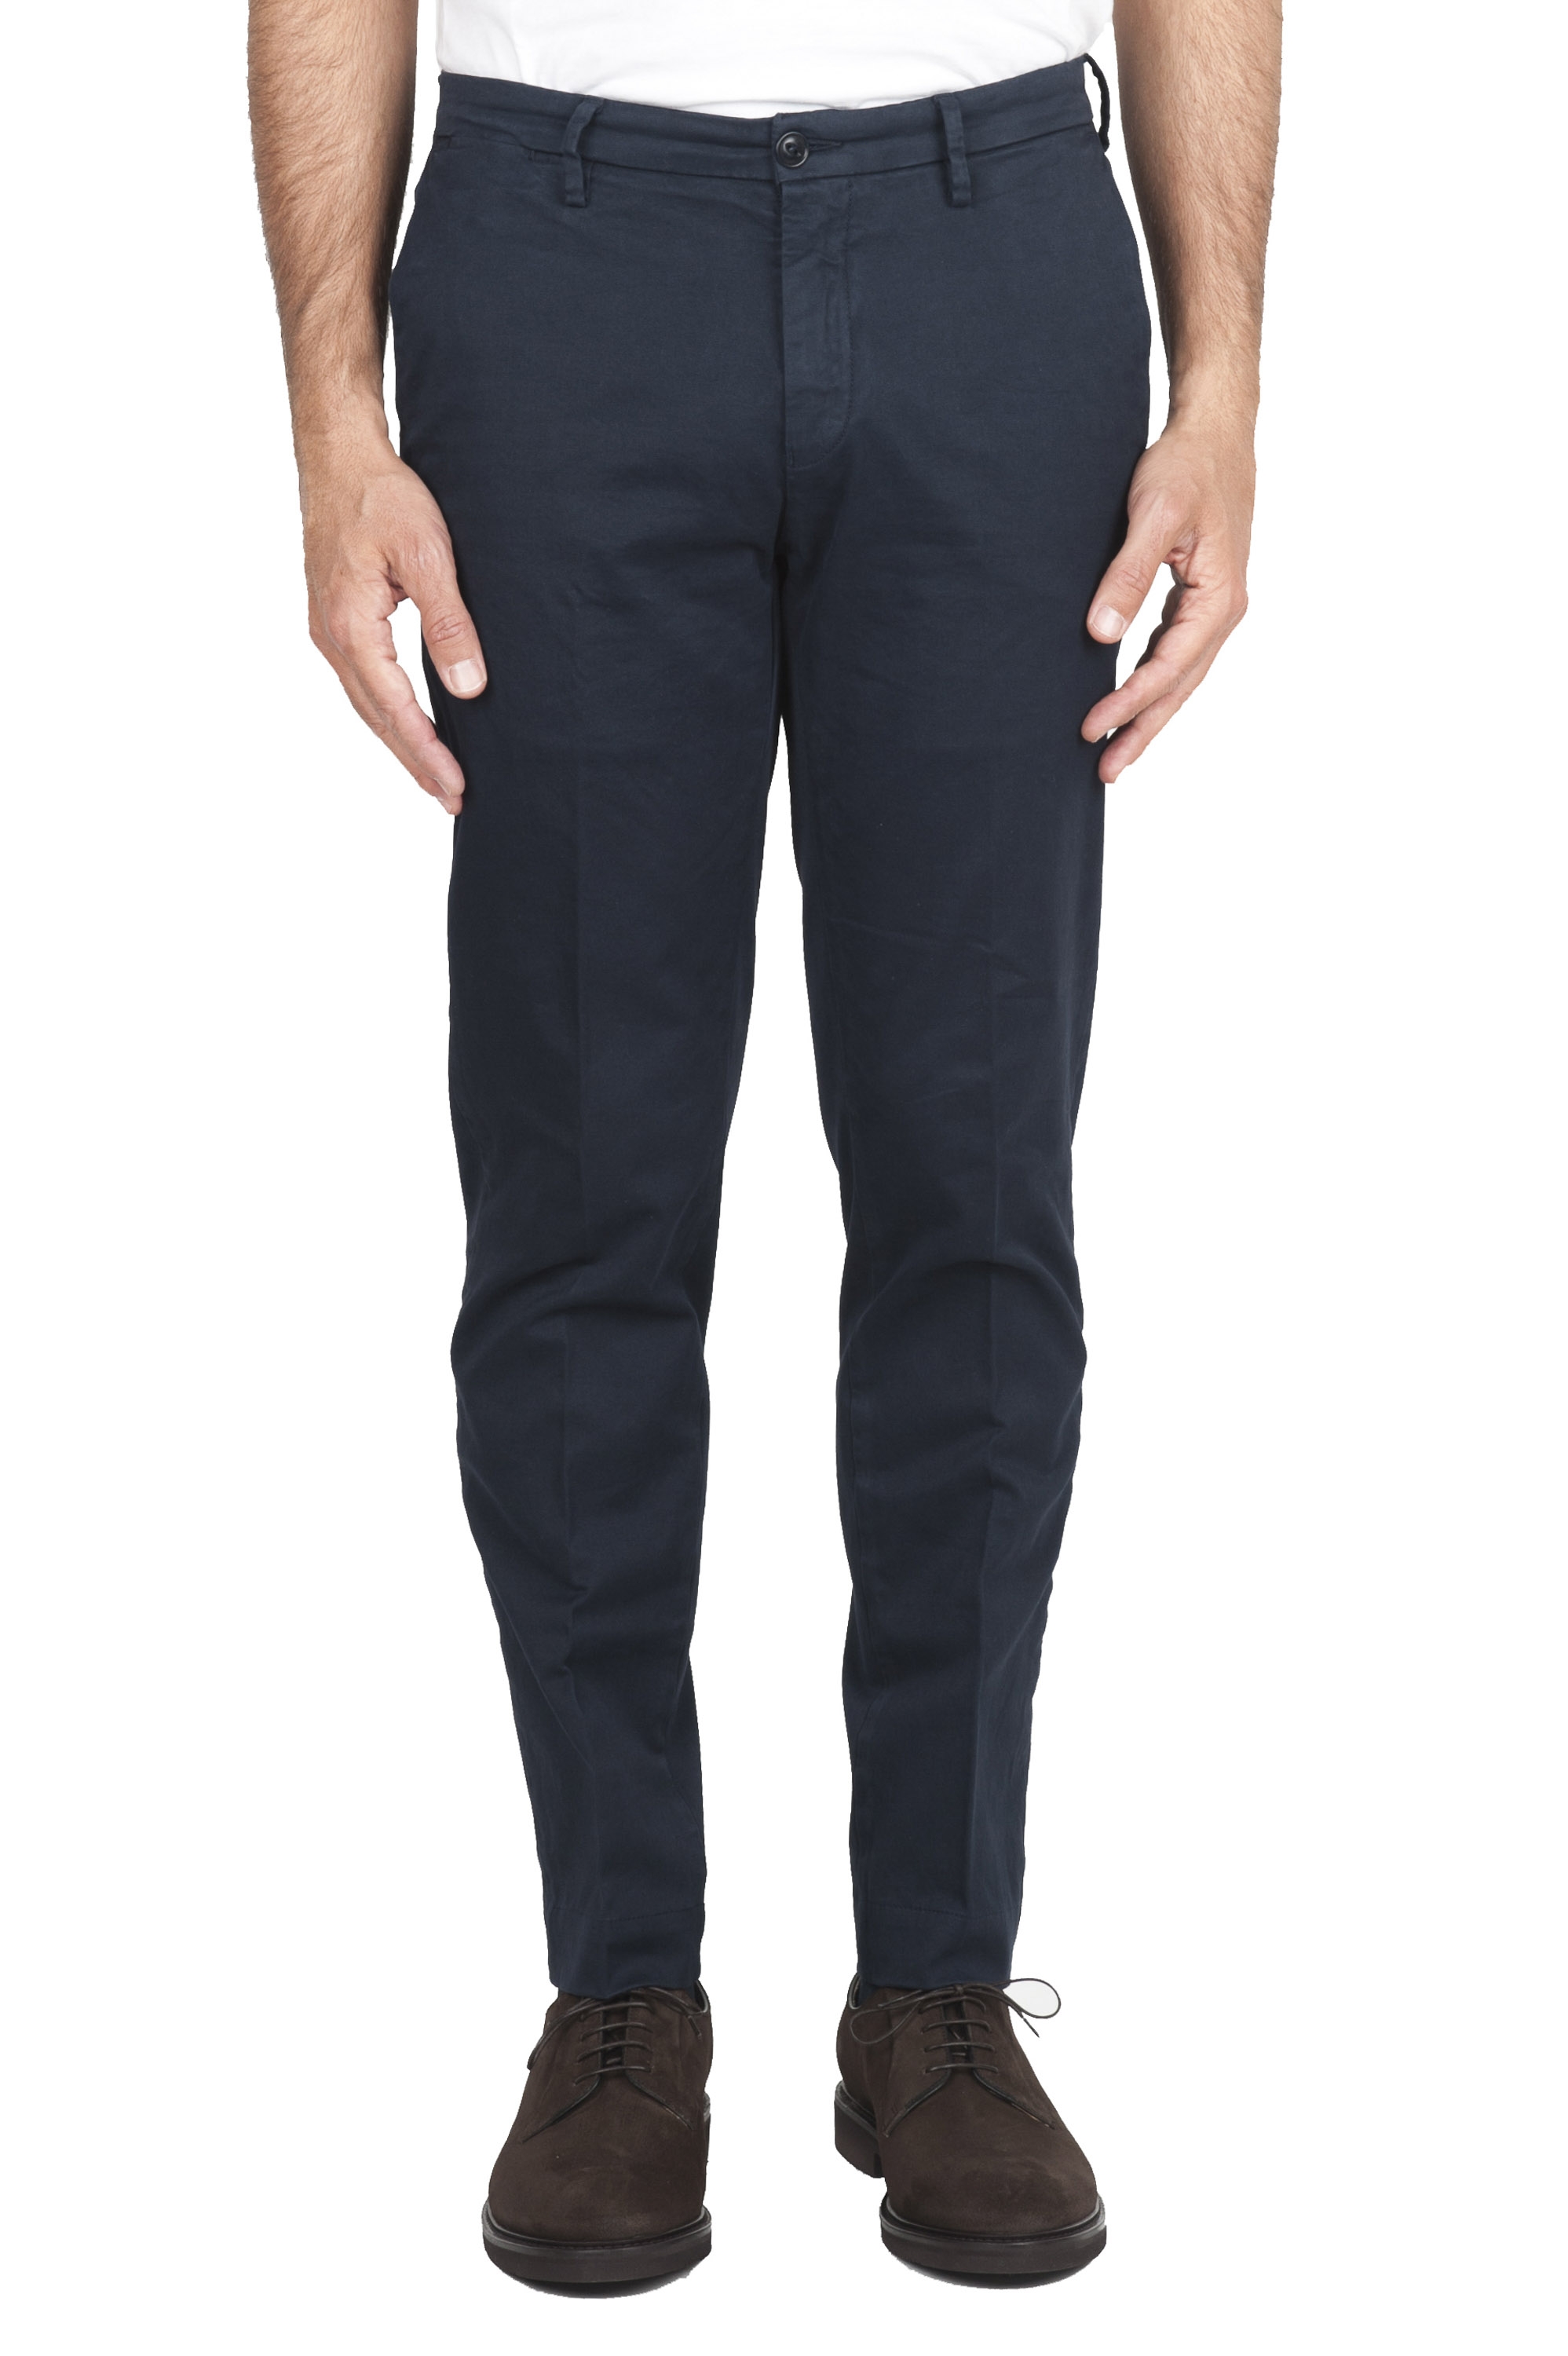 SBU 01533 Pantalones chinos clásicos en algodón elástico azul 01